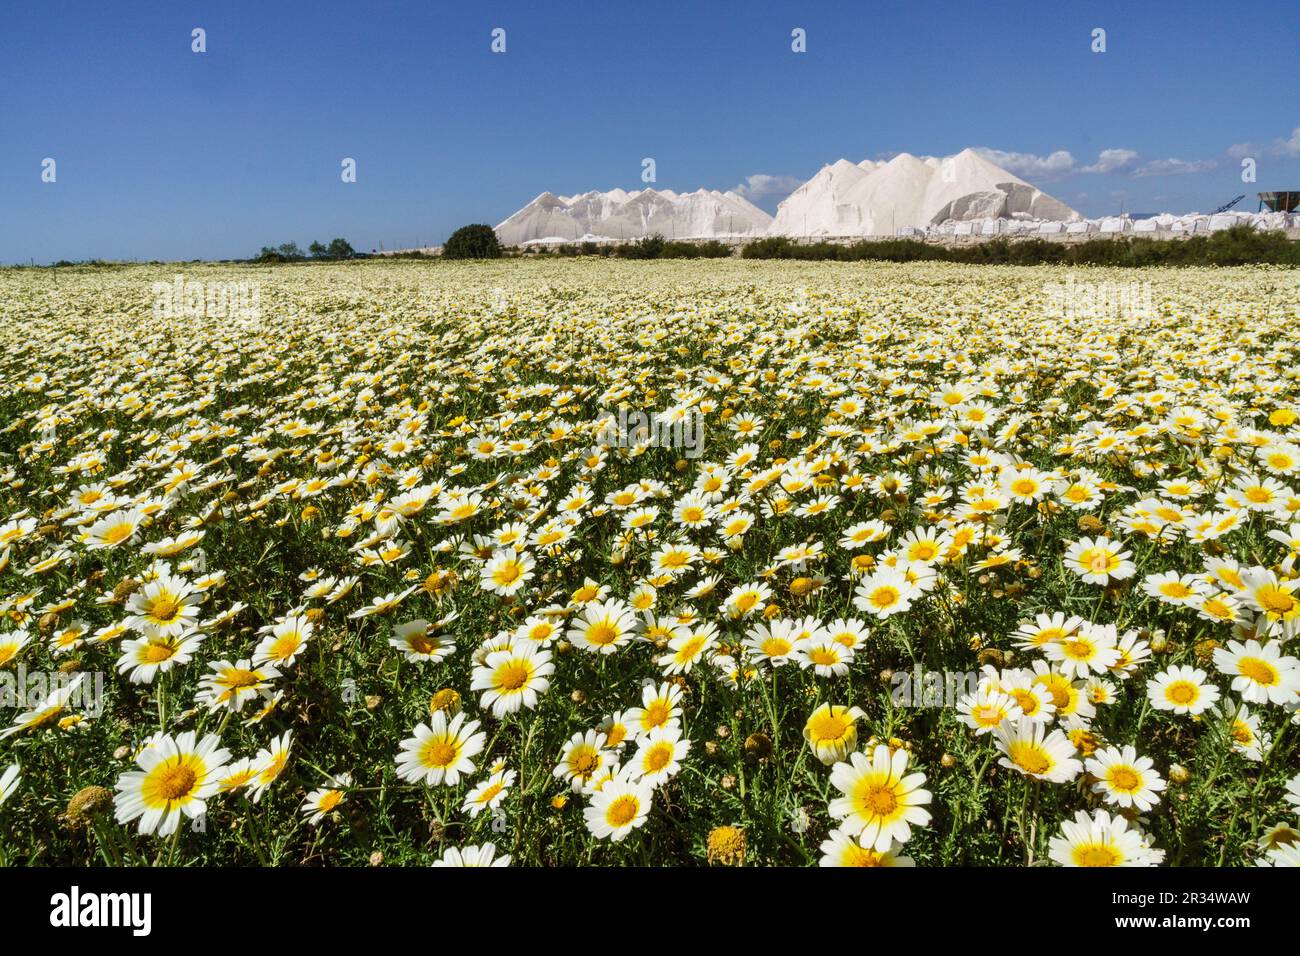 primavera en el salobrar de campos, Ses Salines, Mallorca,Islas Baleares,Spain. Stock Photo